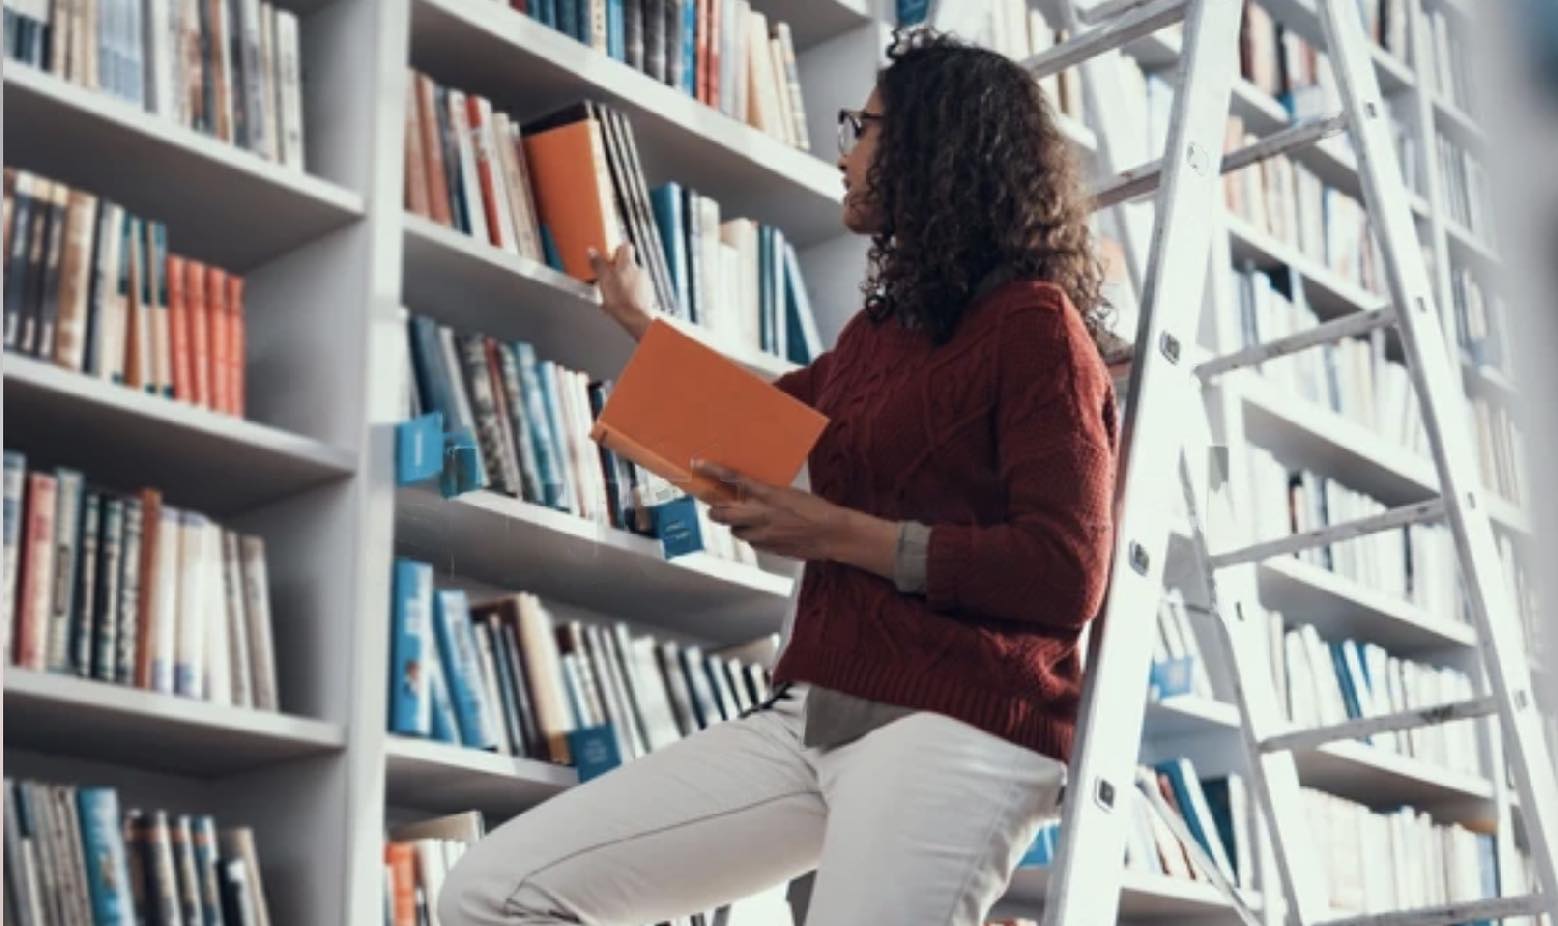 Вдохновение для написания эссе может подарить и поход в книжный магазин или библиотеку, если вы увидите на полке нужное издание. Источник фото: Shutterstock.